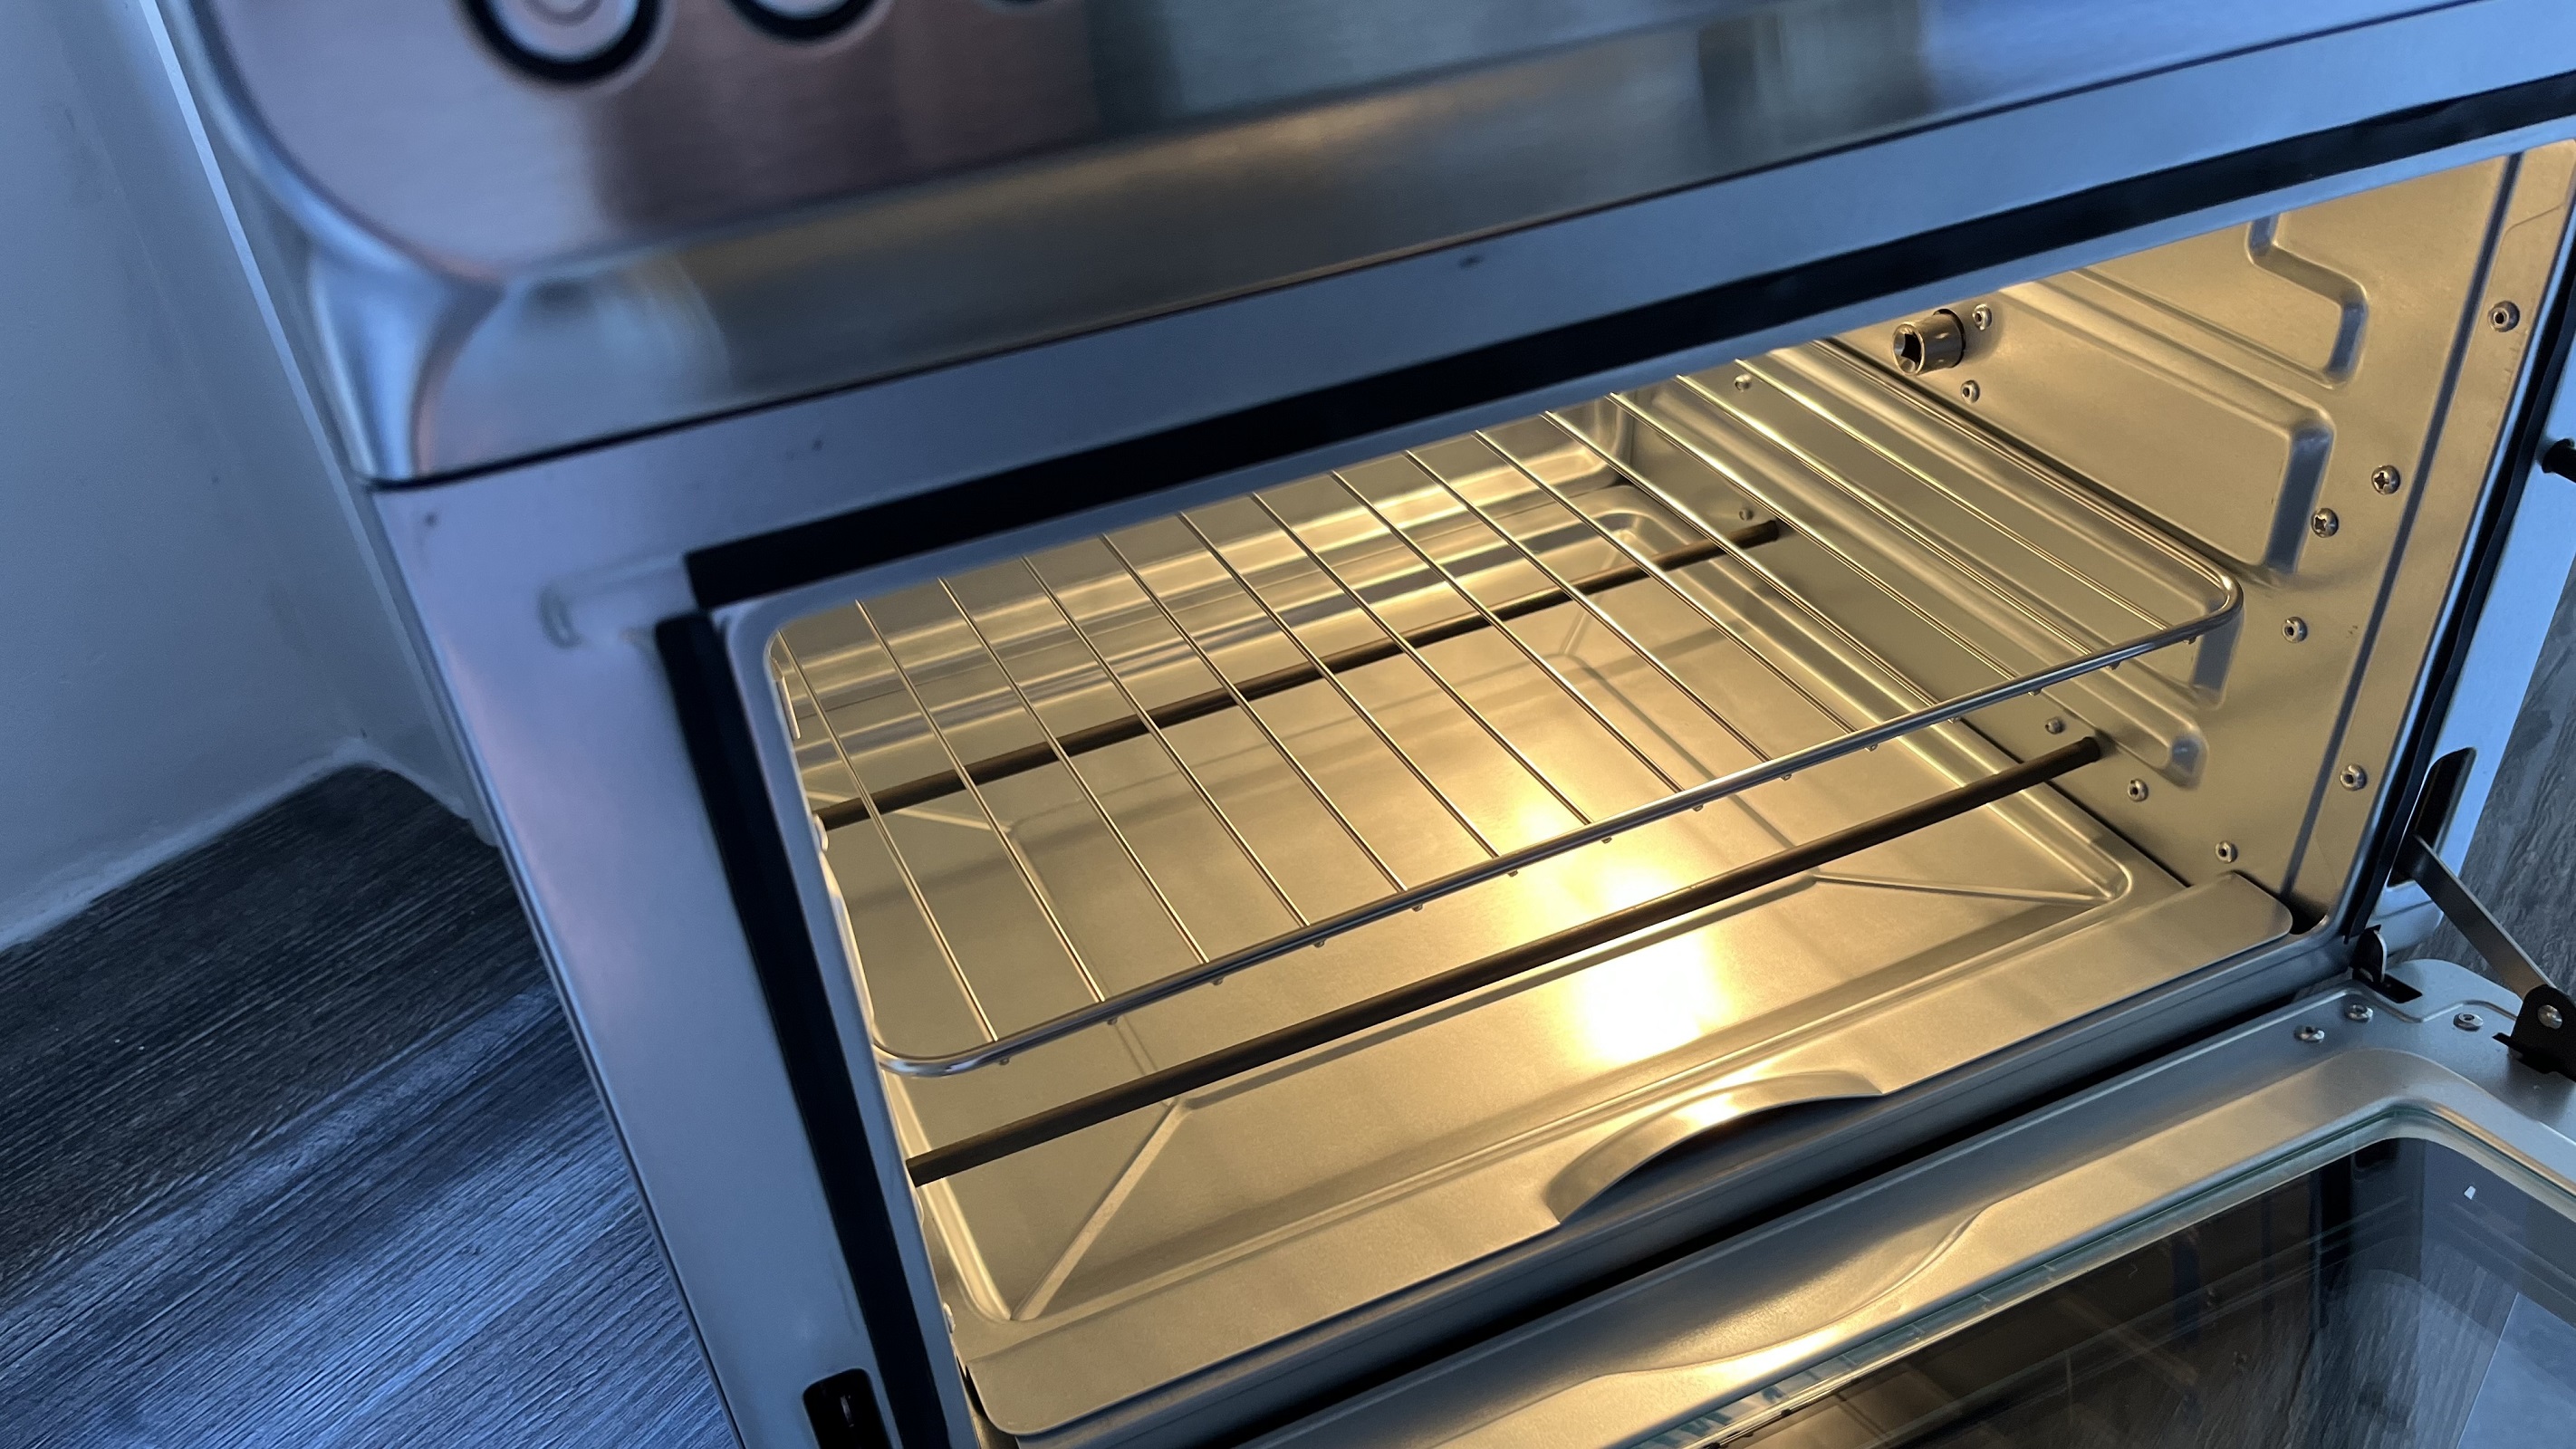 HYSapientia air fryer oven internal light and shelves